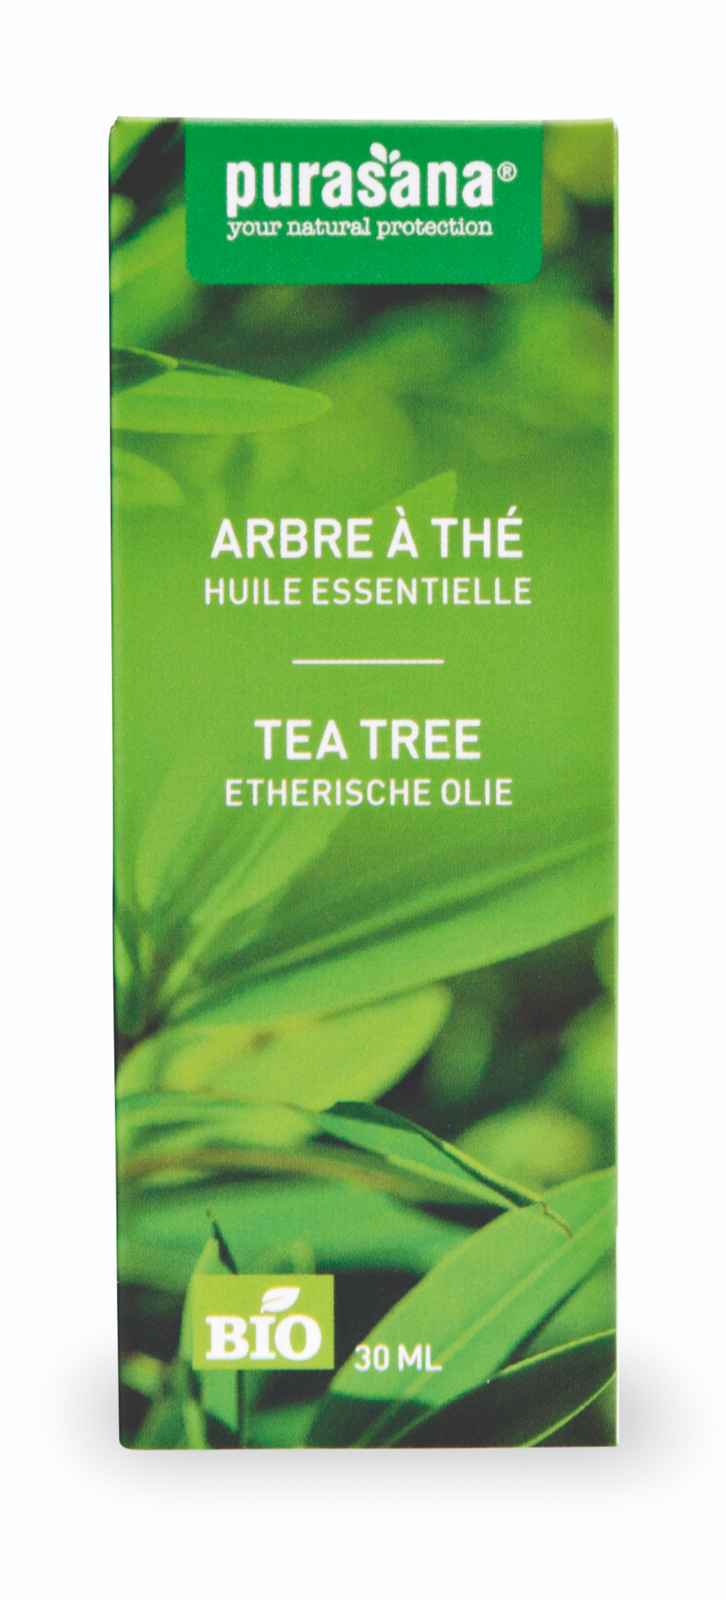 Purasana Etherische Olie Tea Tree